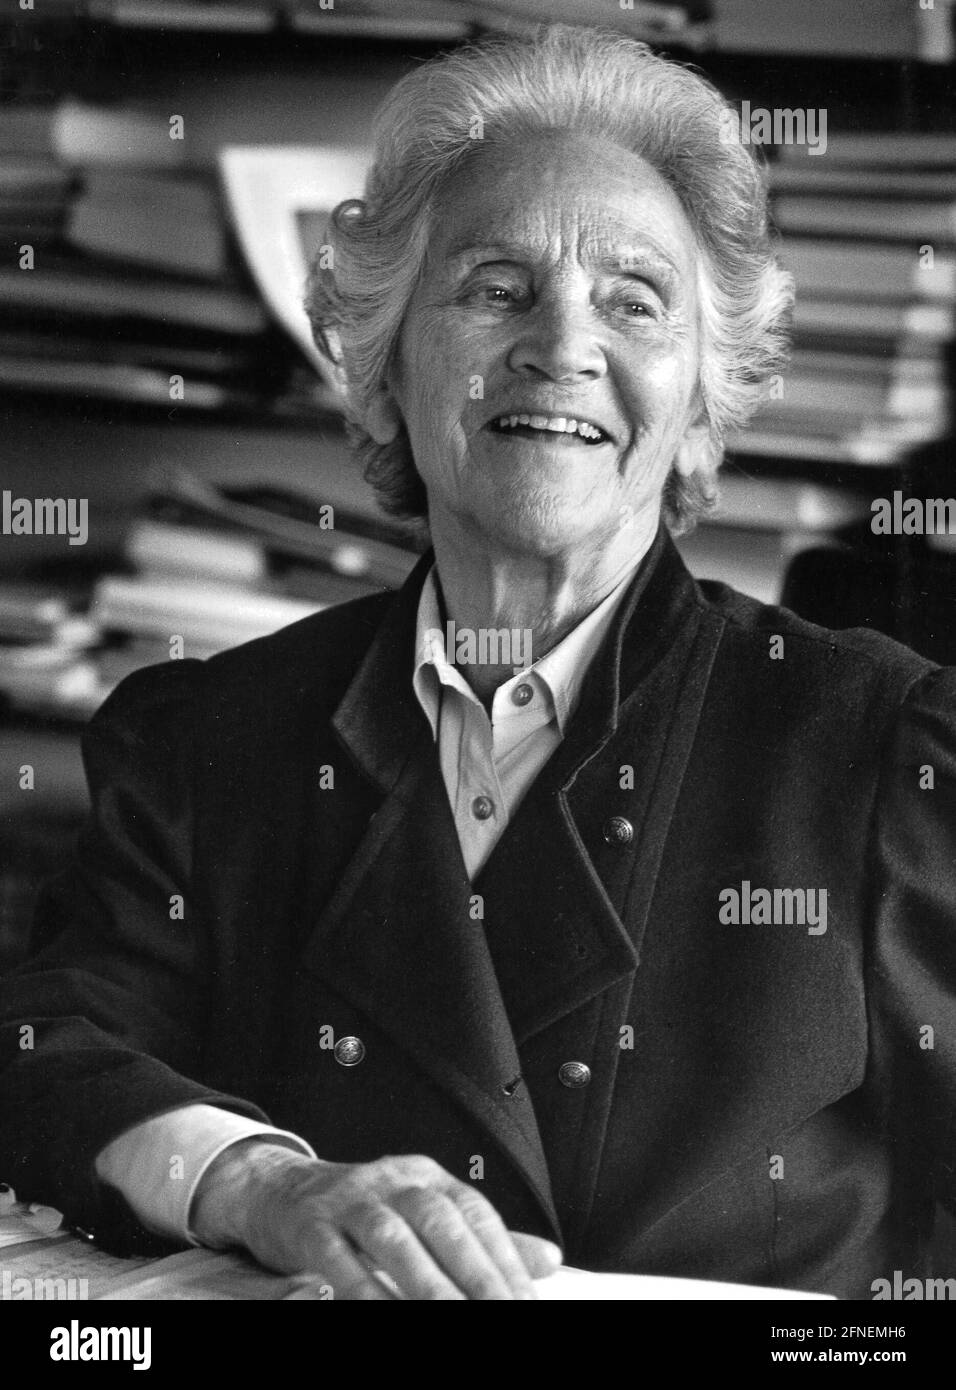 Marion Gräfin von Dönhoff (1909-2002), periodista alemán, autor y editor del periódico semanal 'Die Zeit'. Fotografía sin fecha. [traducción automática] Foto de stock